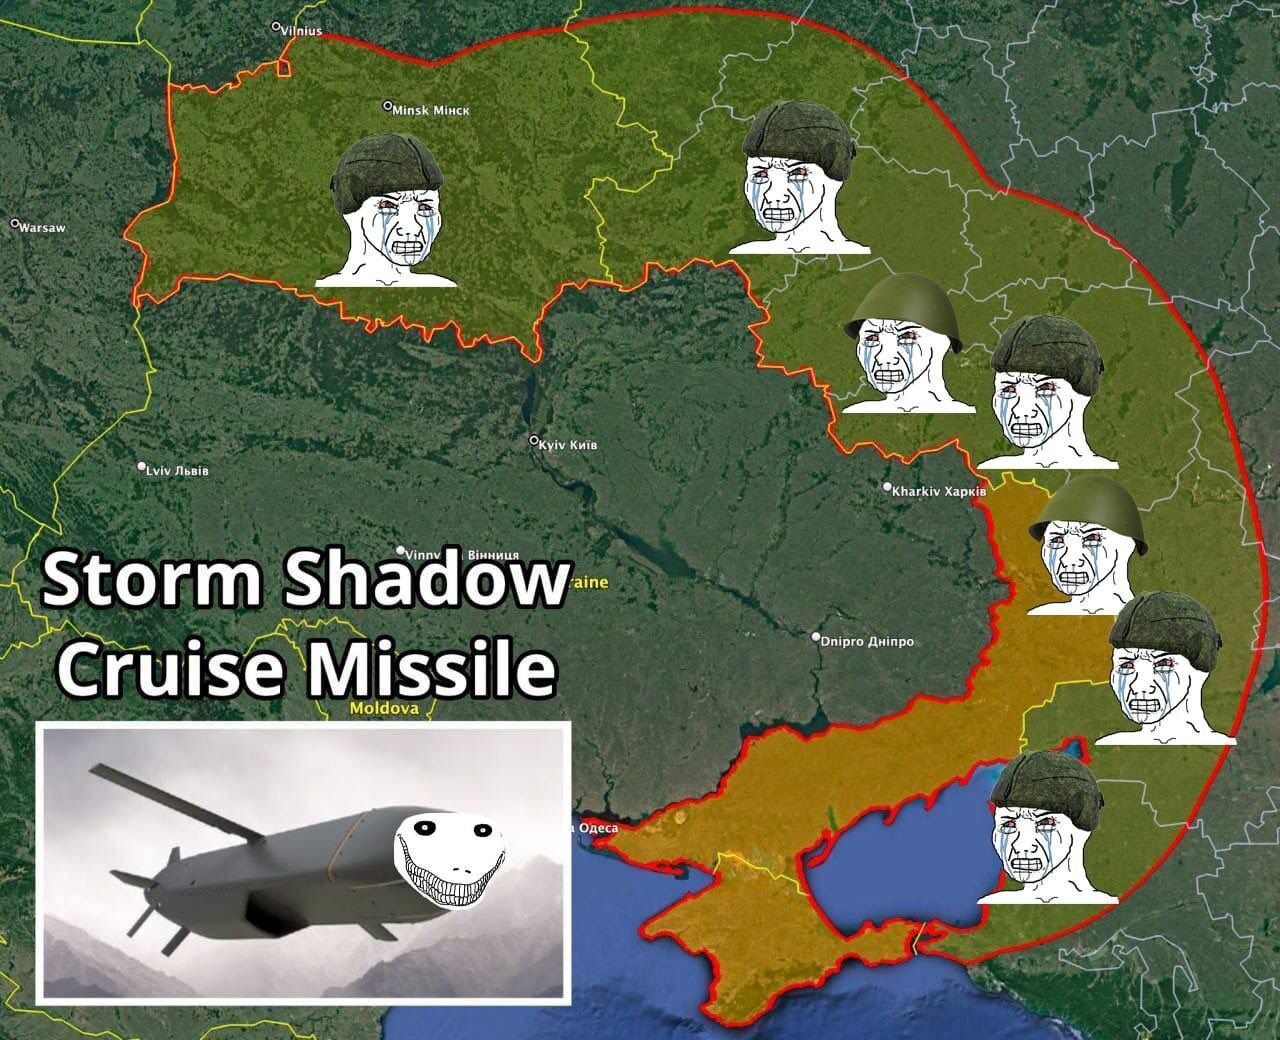 Територія, яка також може мати побачення з ракетою, яку отримала Україна